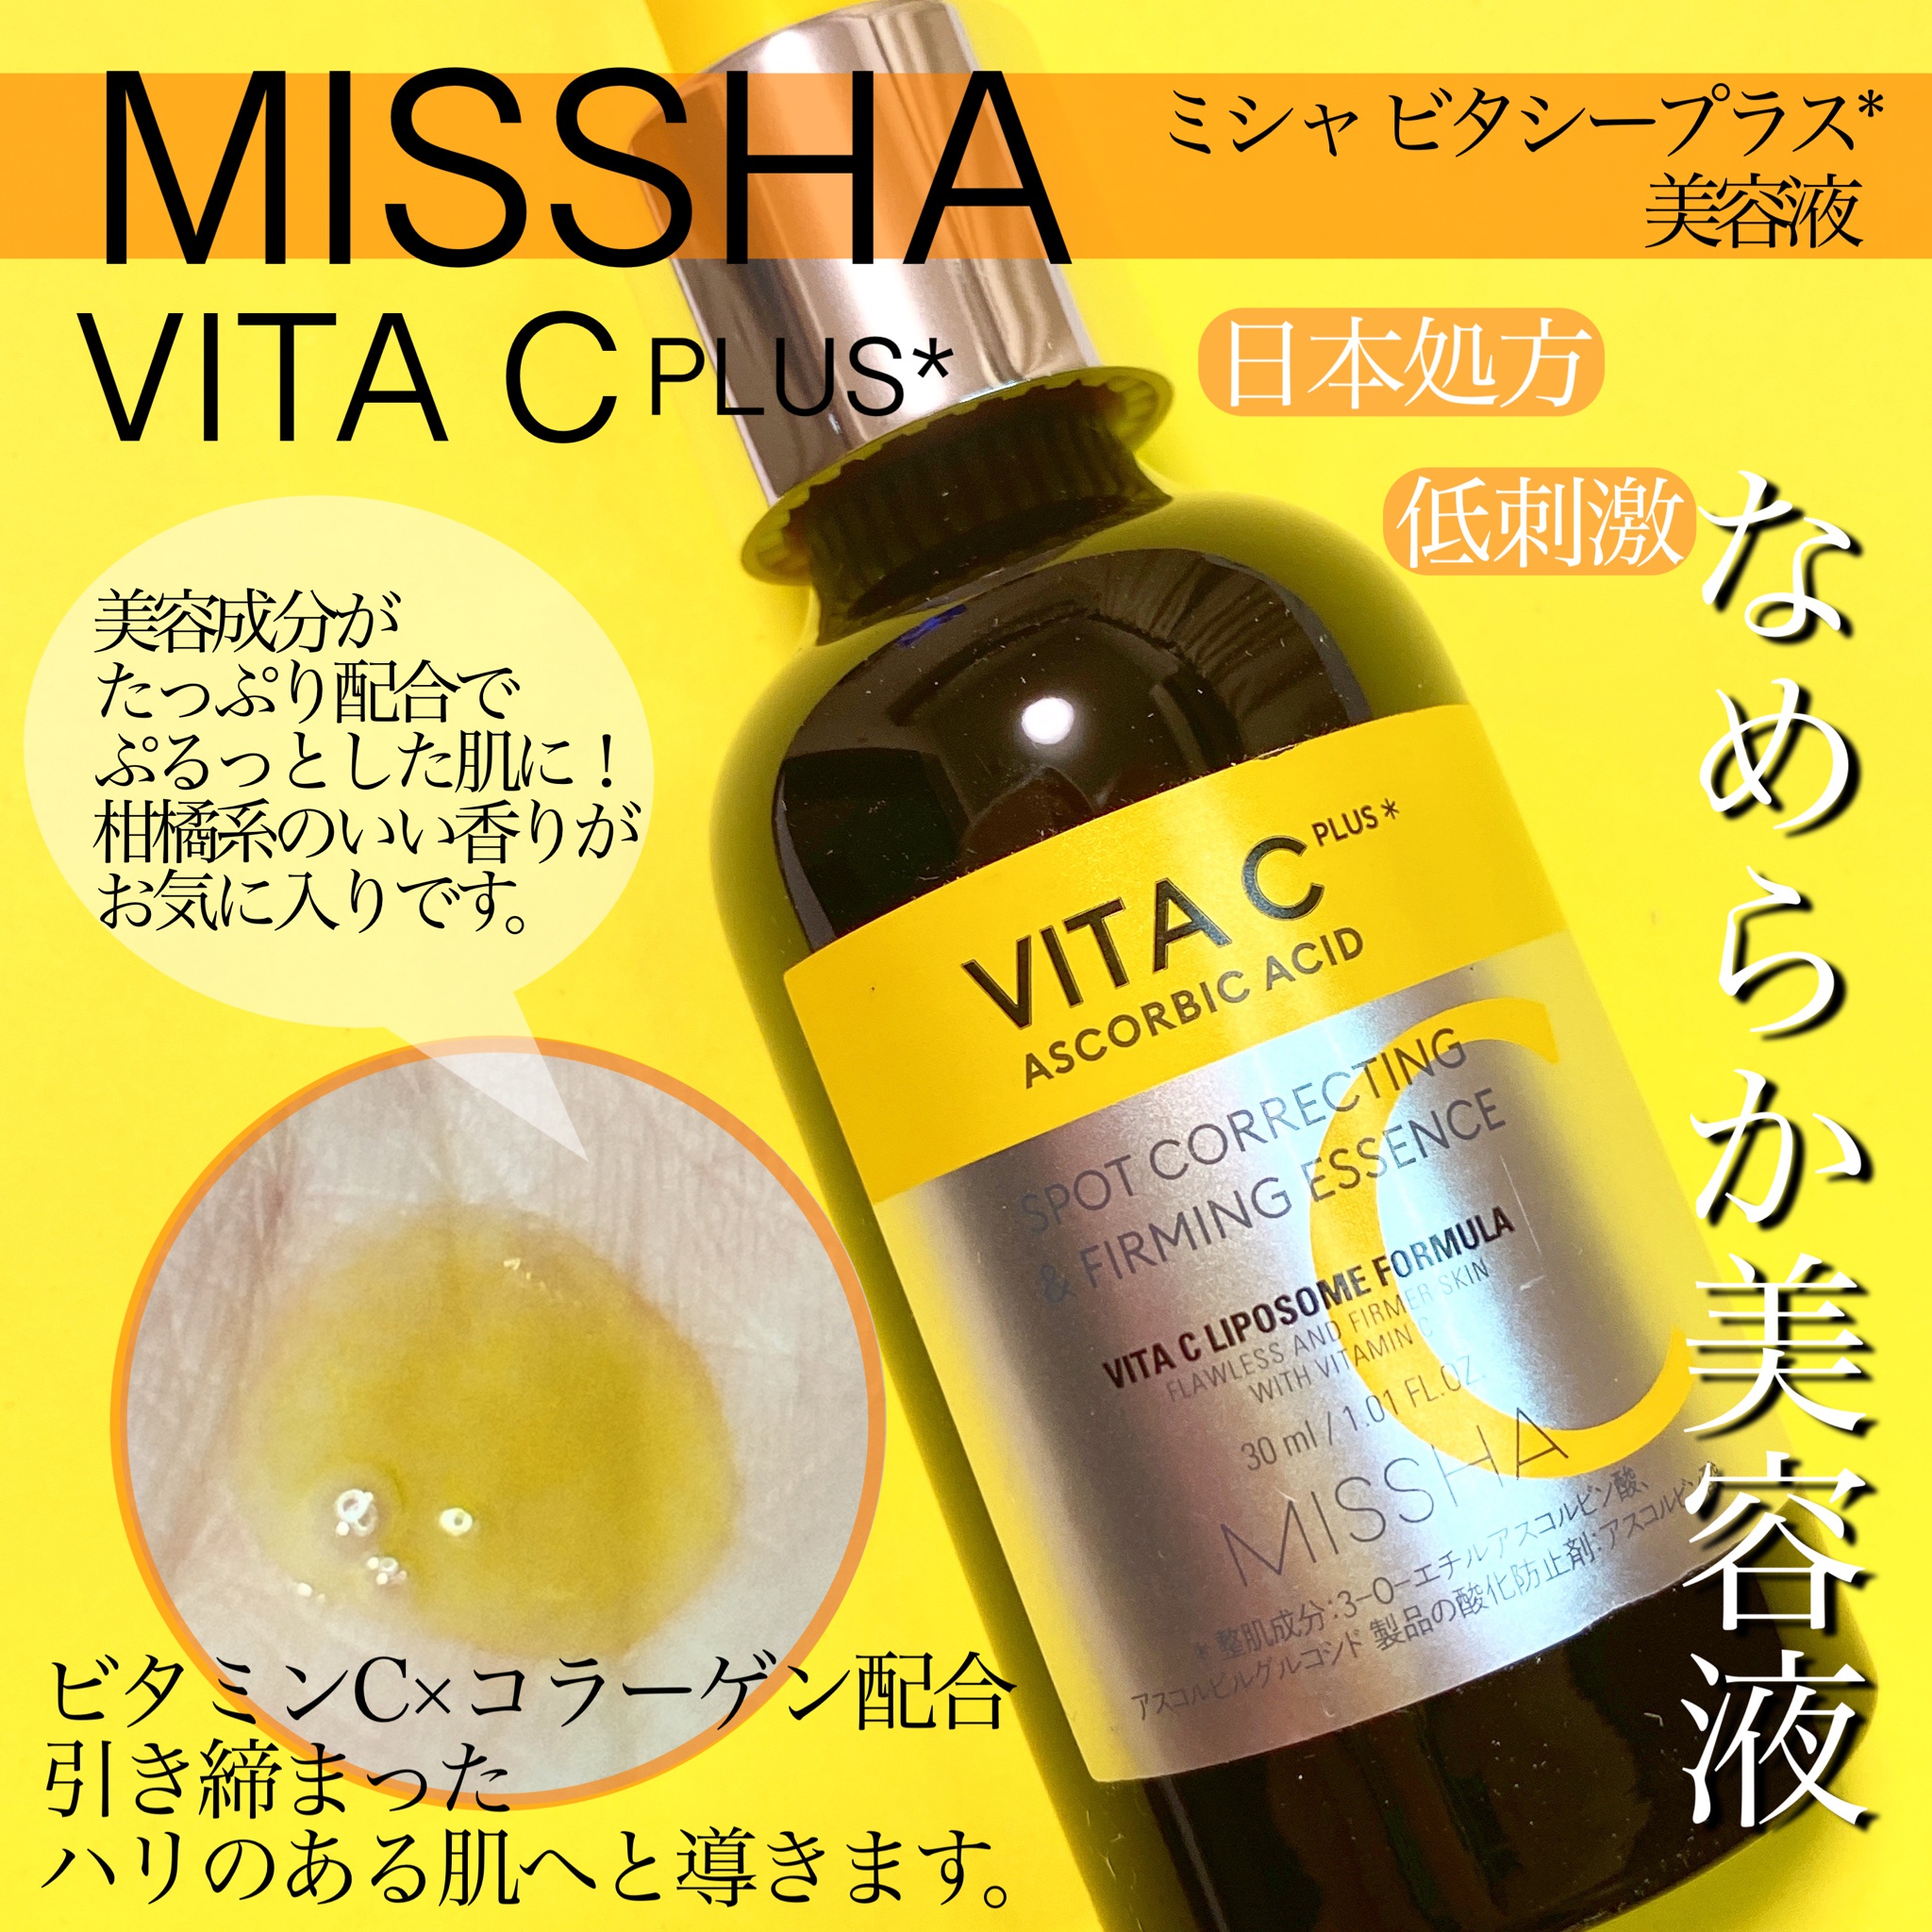 ミシャ ビタシープラス 化粧水とクリームの2点セット - 通販